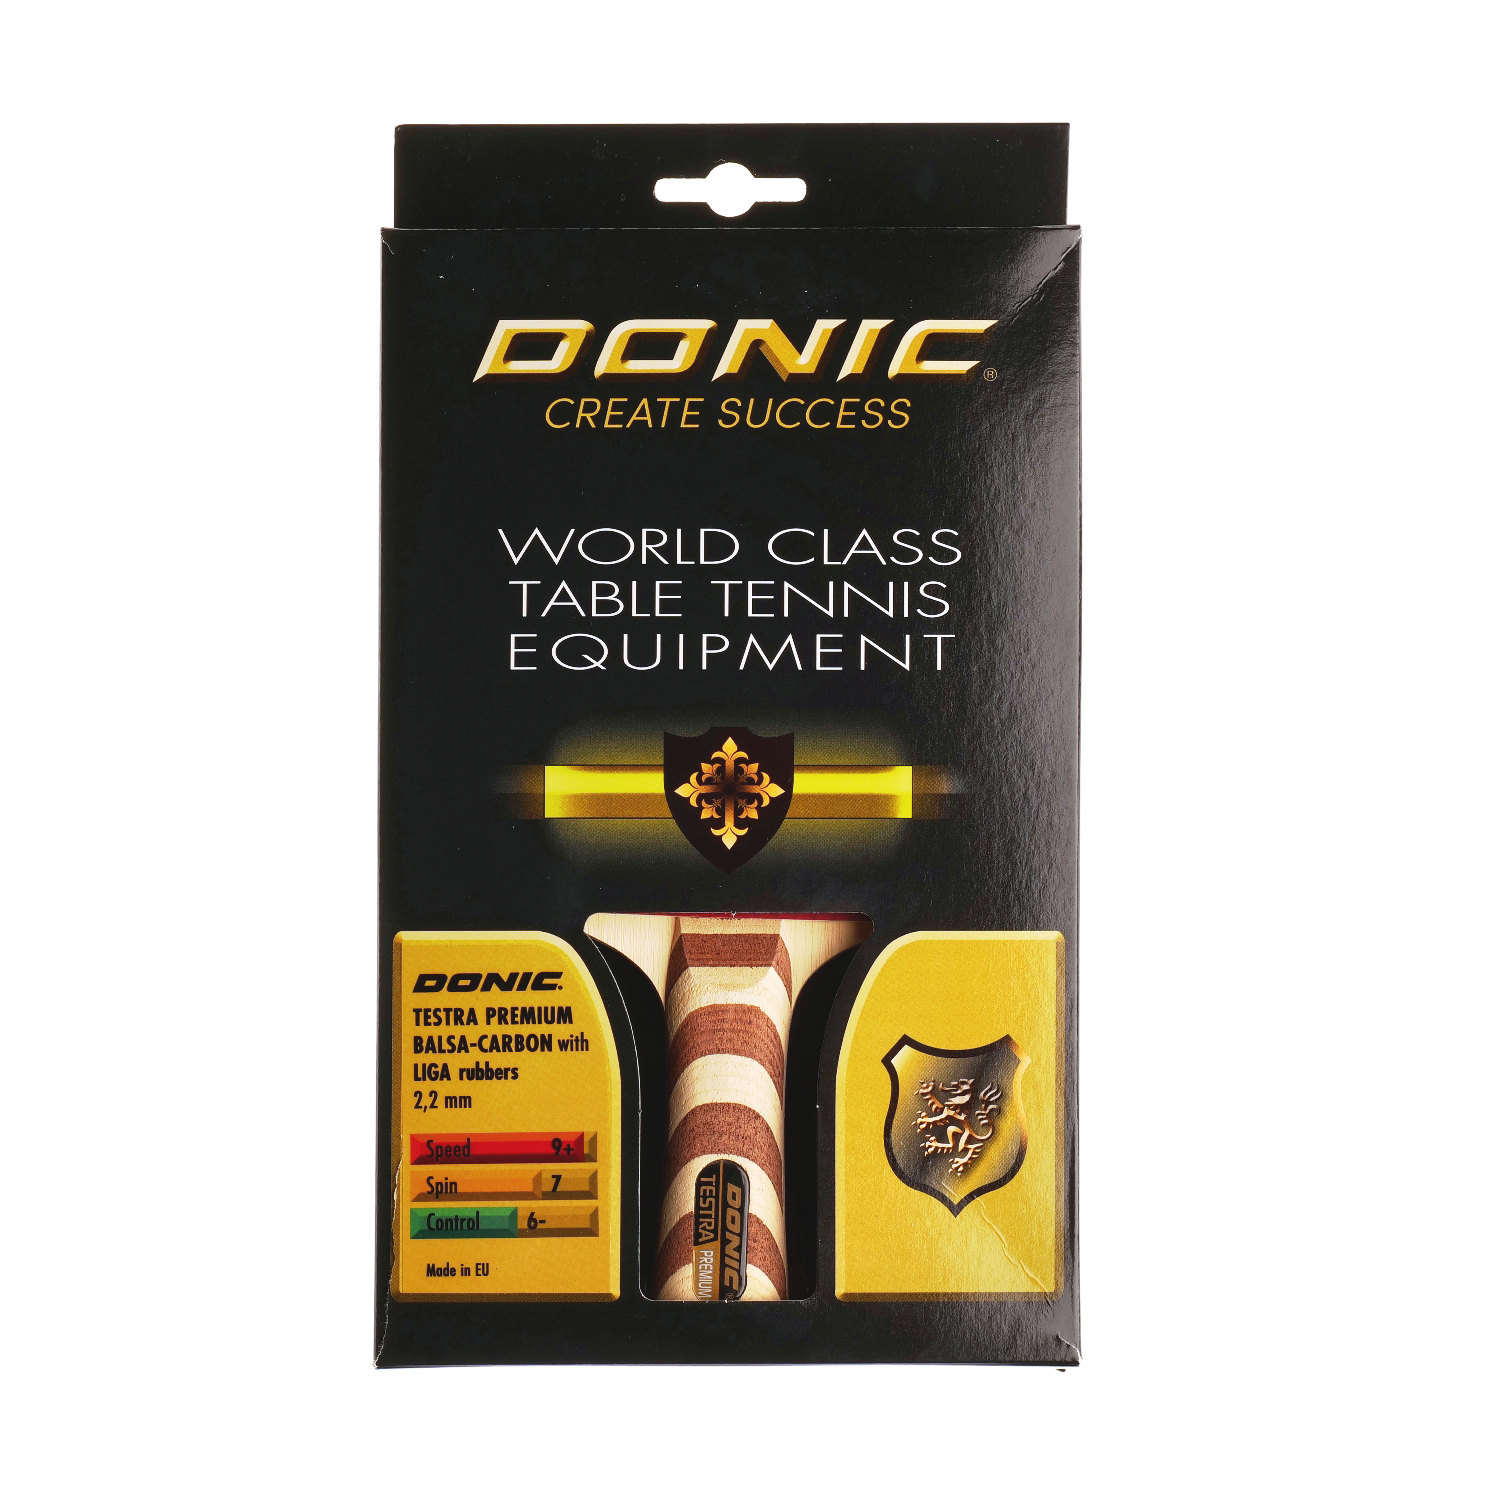 фото Ракетка для настольного тенниса donic testra premium, коническая ручка, 4 звезды